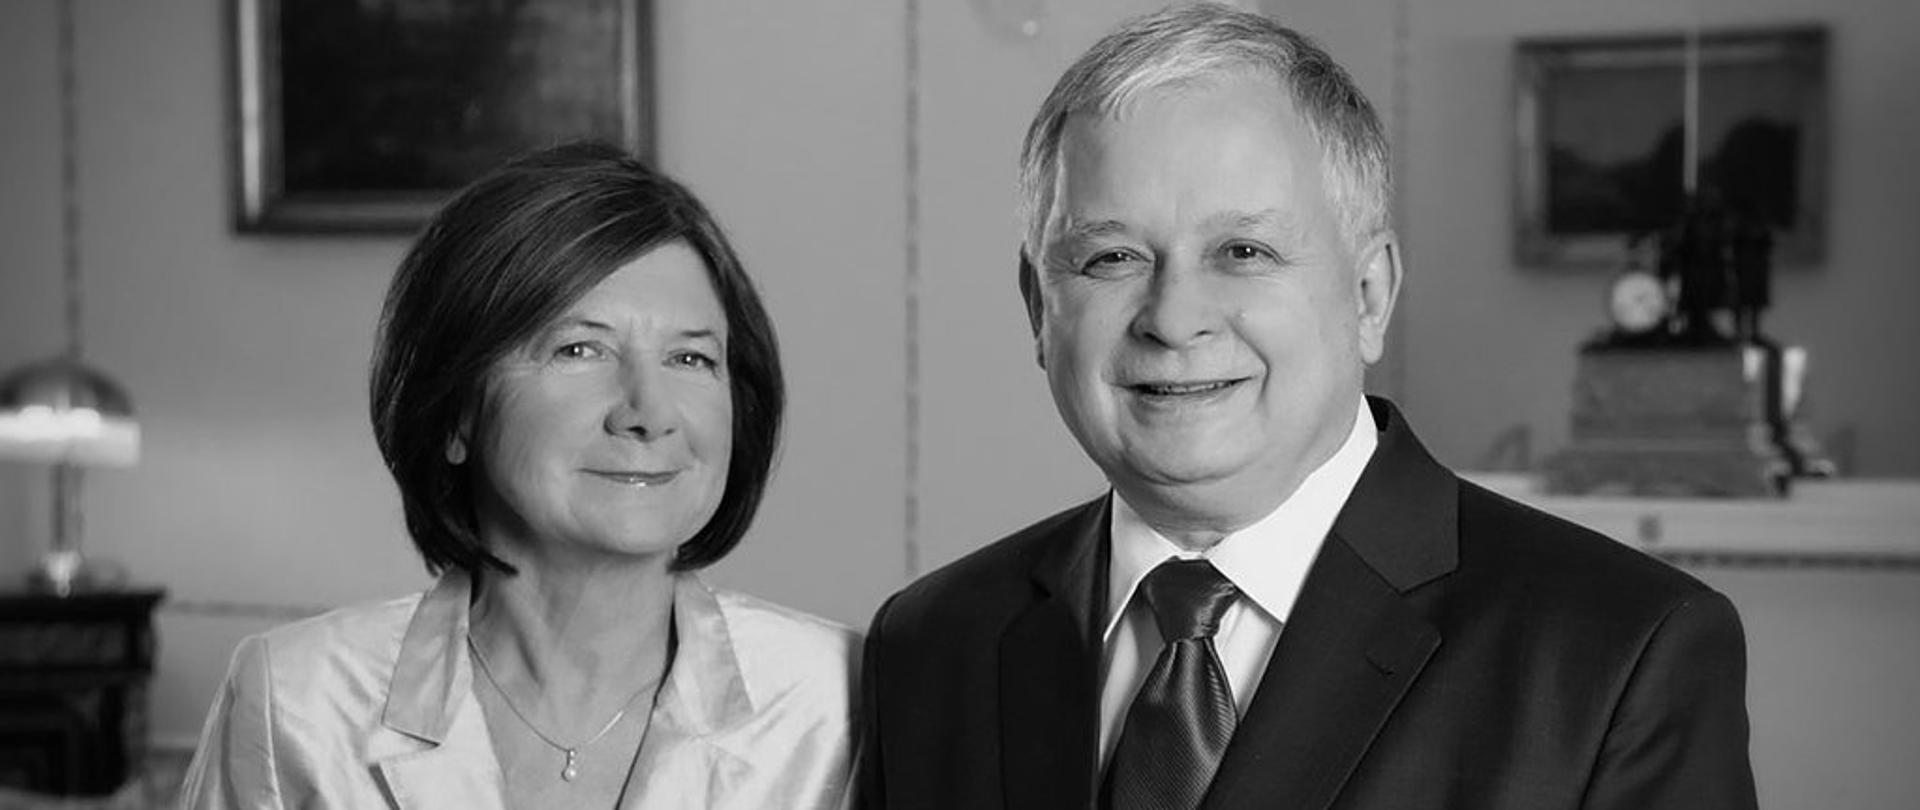 Prezydent Lech Kaczyński wraz z żoną Marią